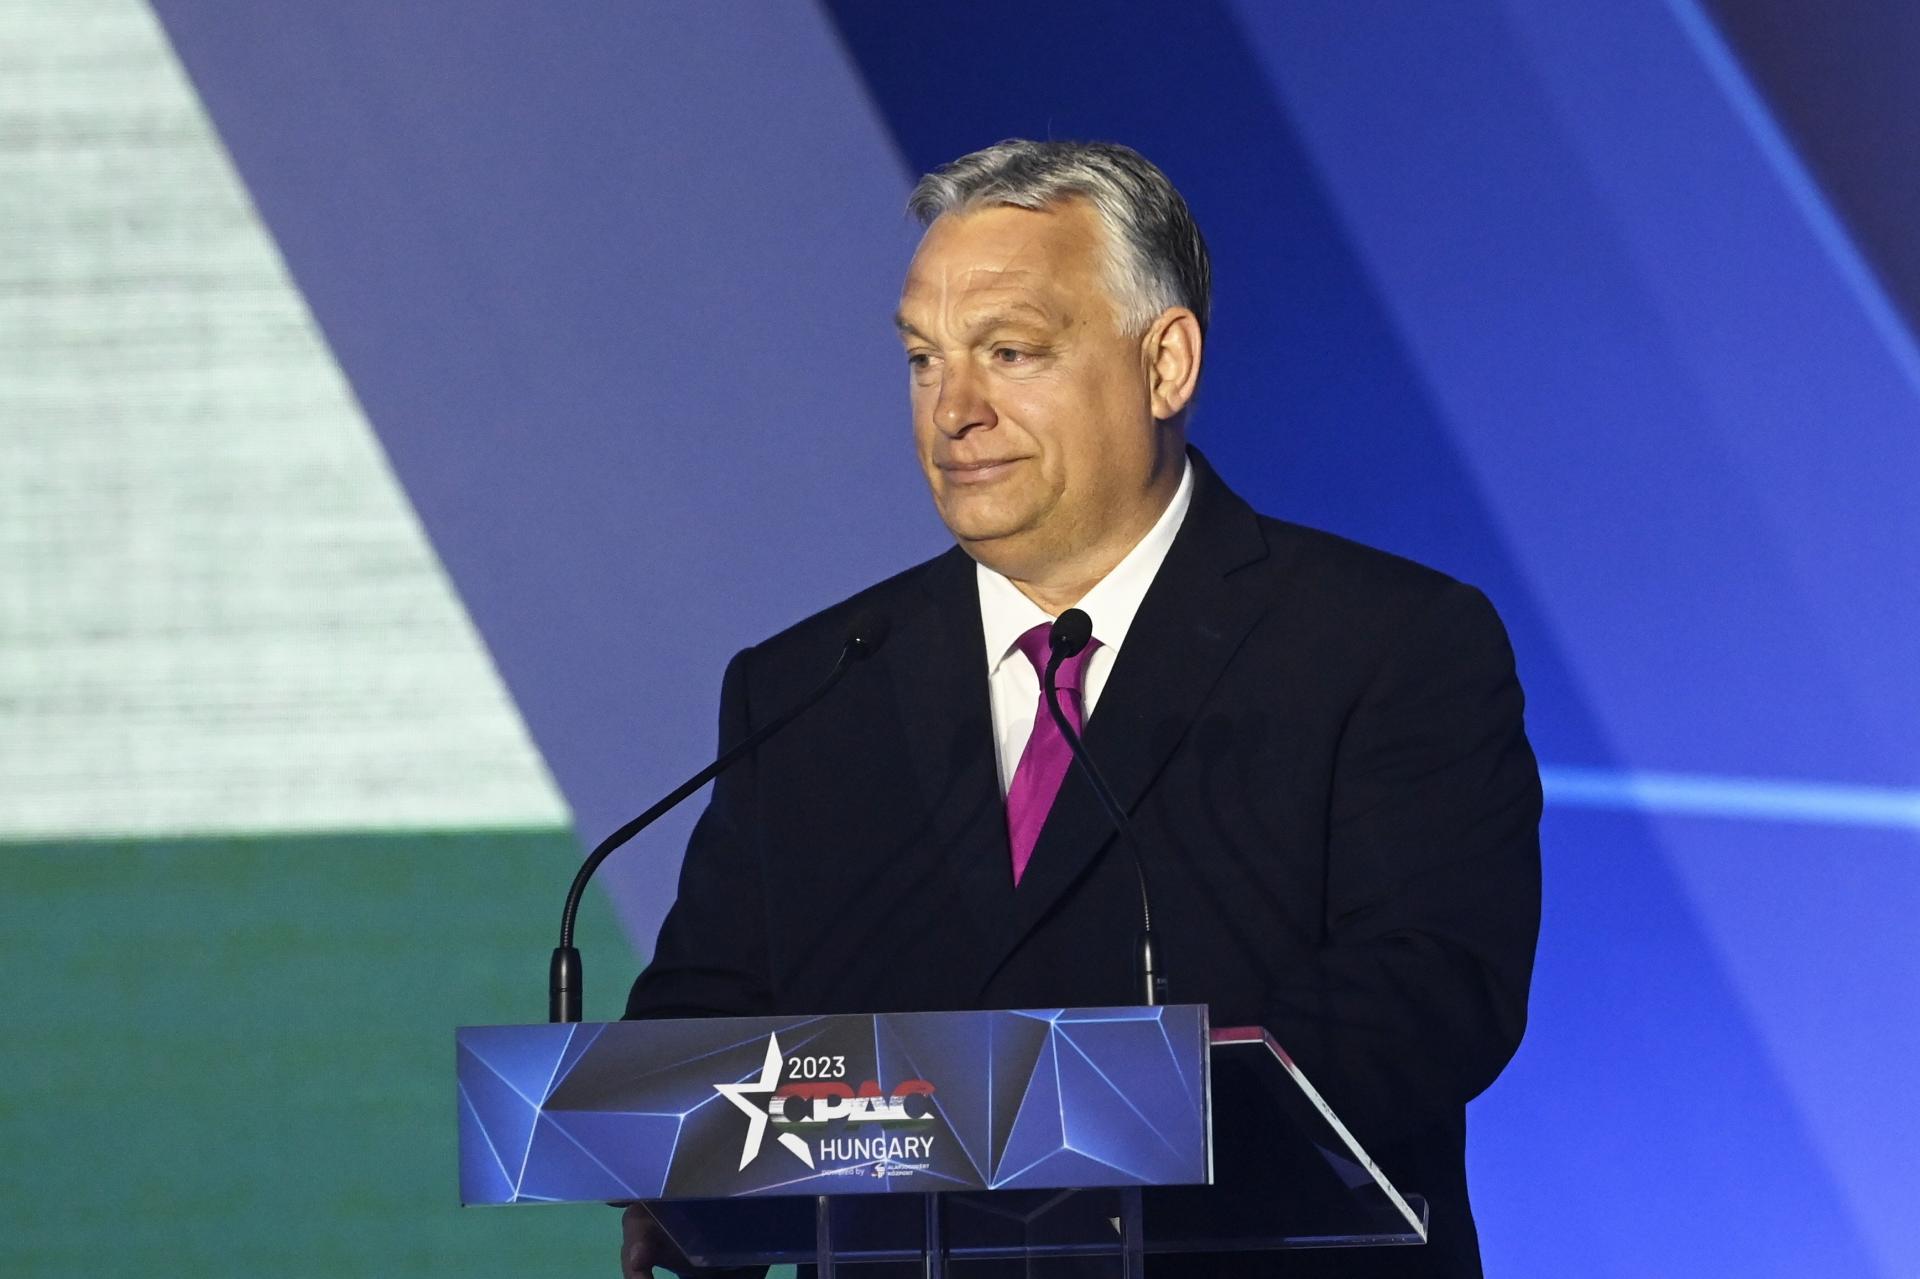 Viktor Orbán prirovnal projekt európskej integrácie k Hitlerovmu plánu na svetovládu